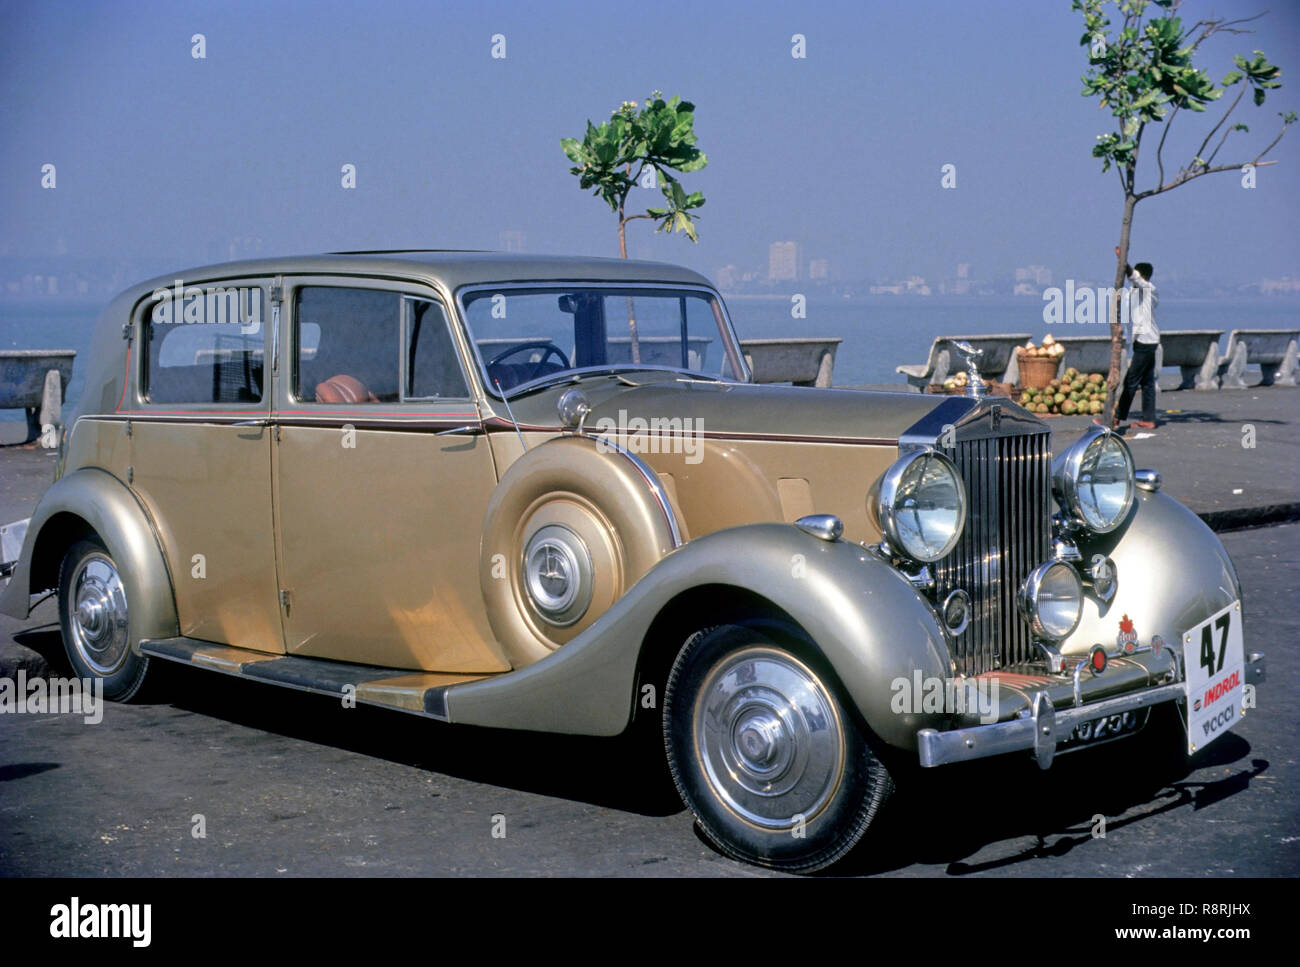 Vintage Car, Rolls Royce, nariman point, marine drive, bombay, mumbai, maharashtra, india, asia Stock Photo